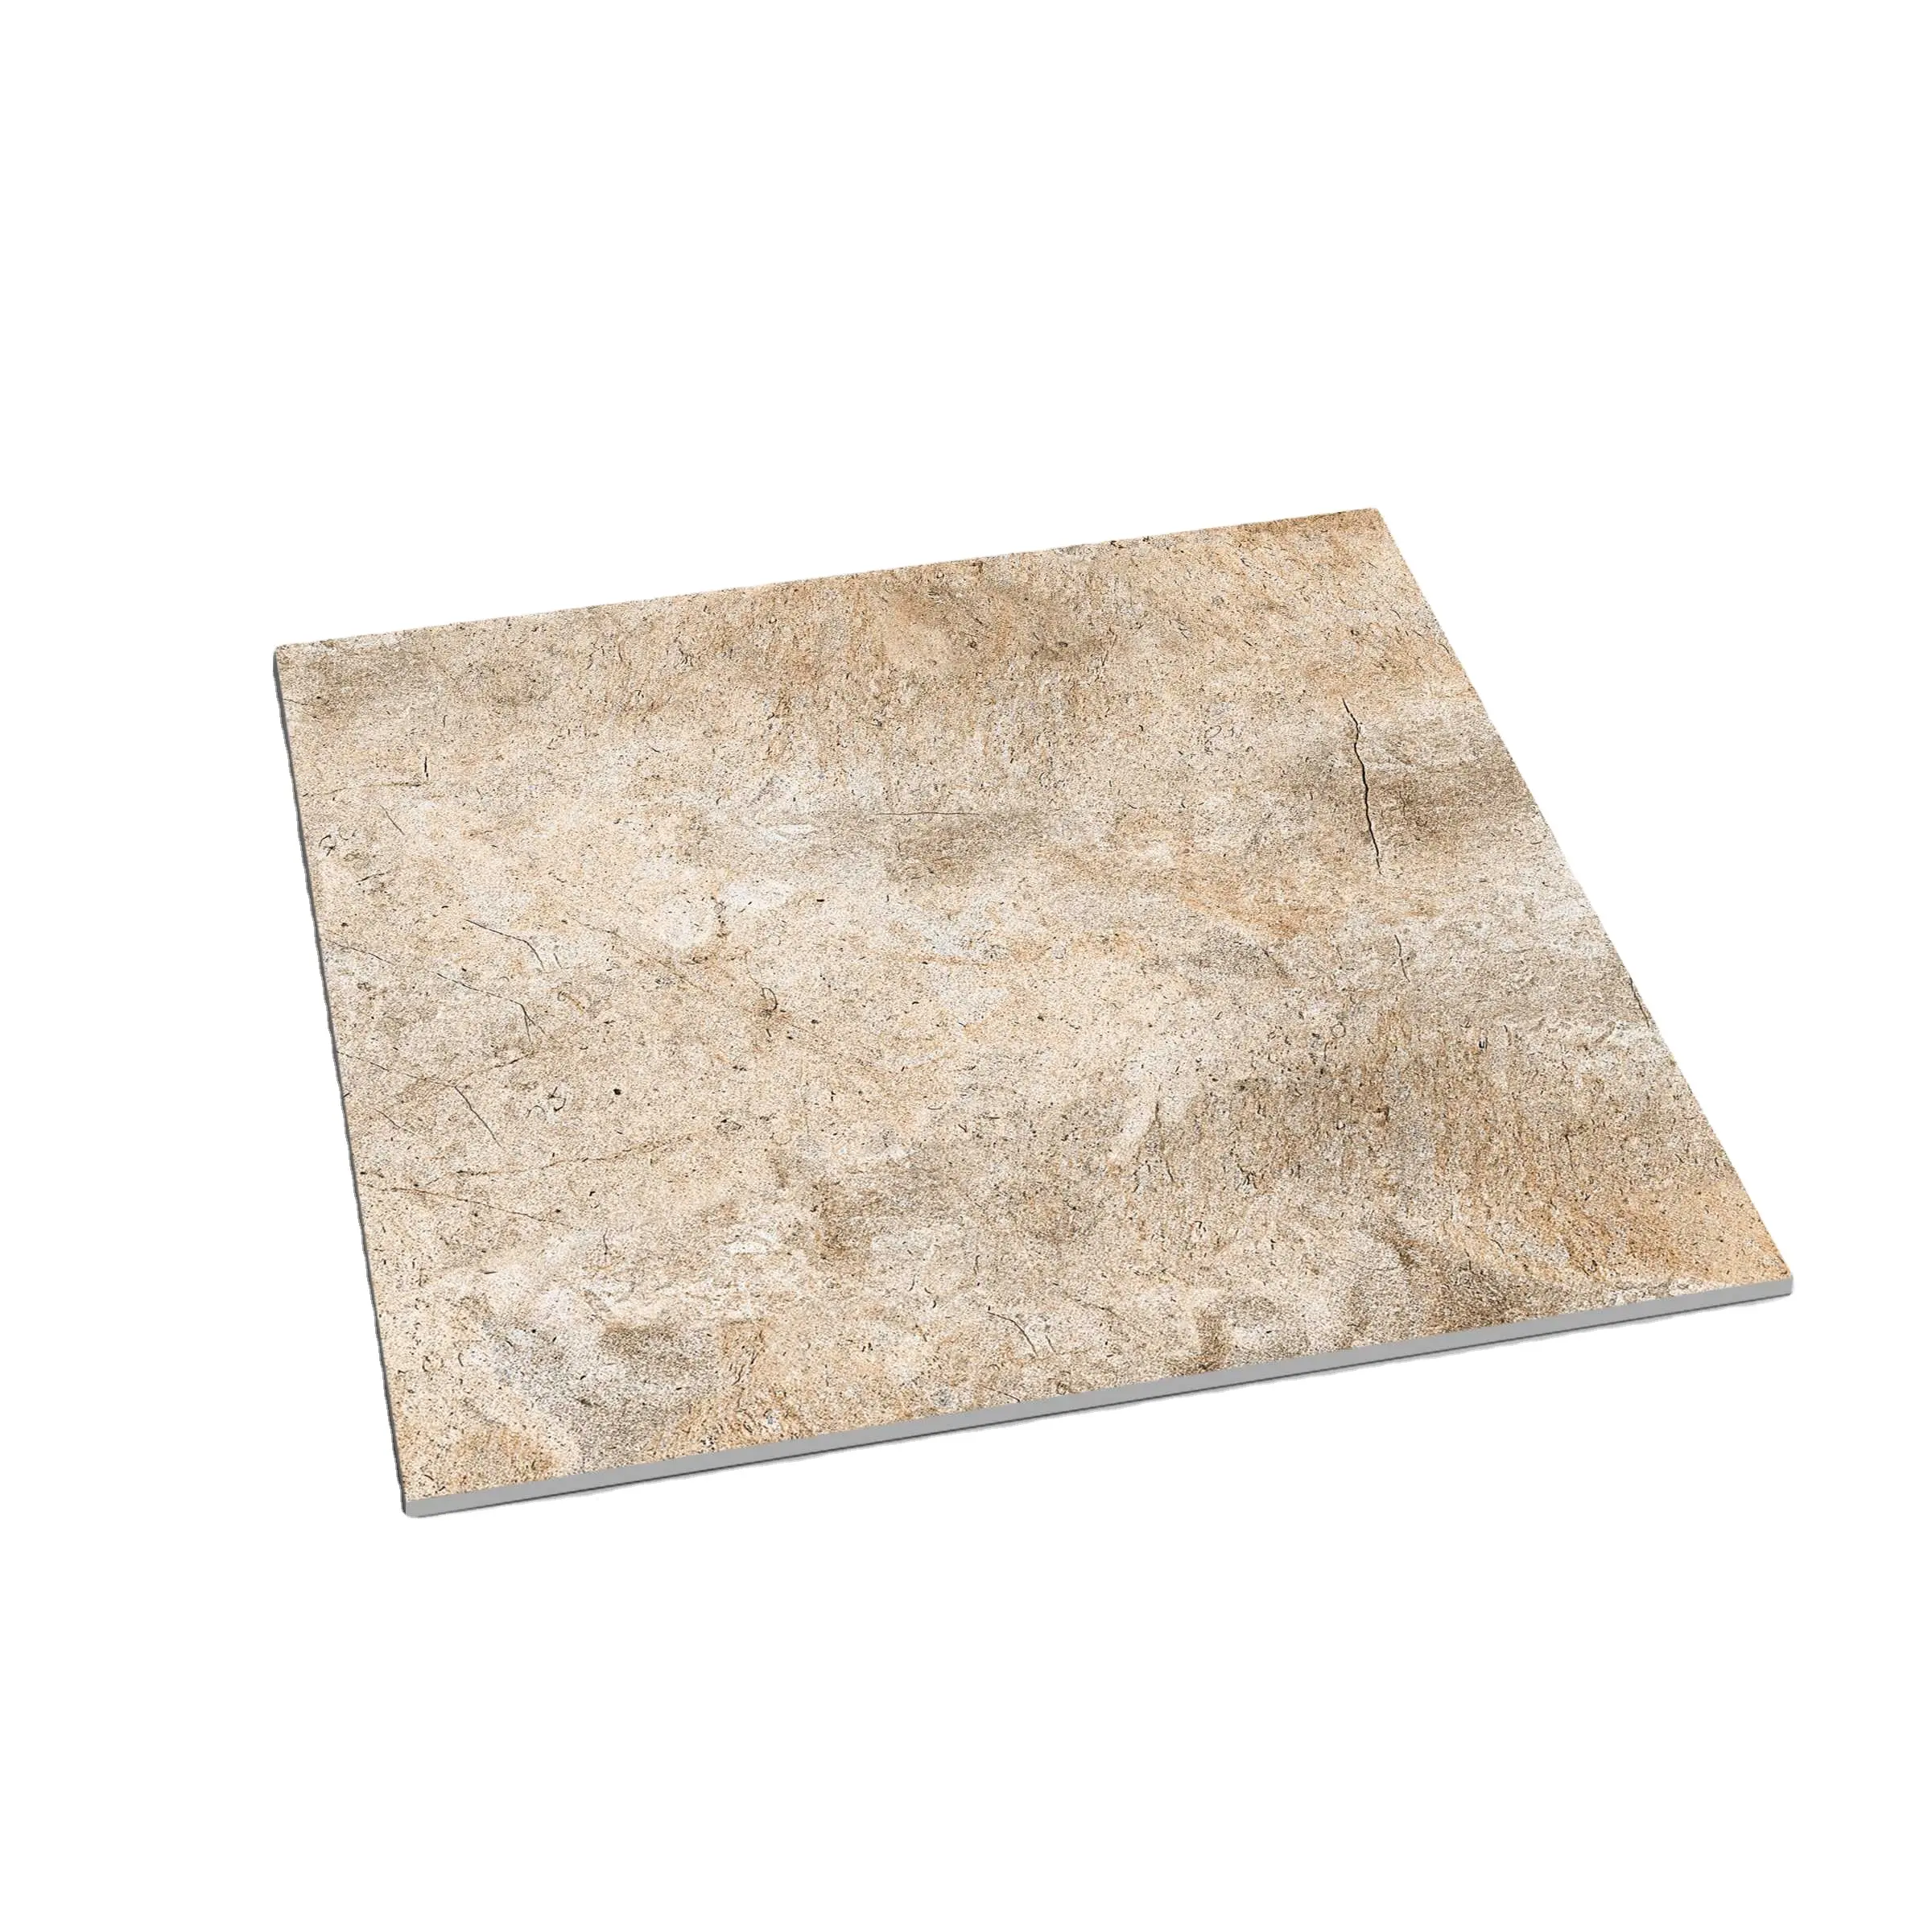 Matte finish non slip skytouch ceramic matt tile beige brown wooden design wood effect spanish porcelain tile